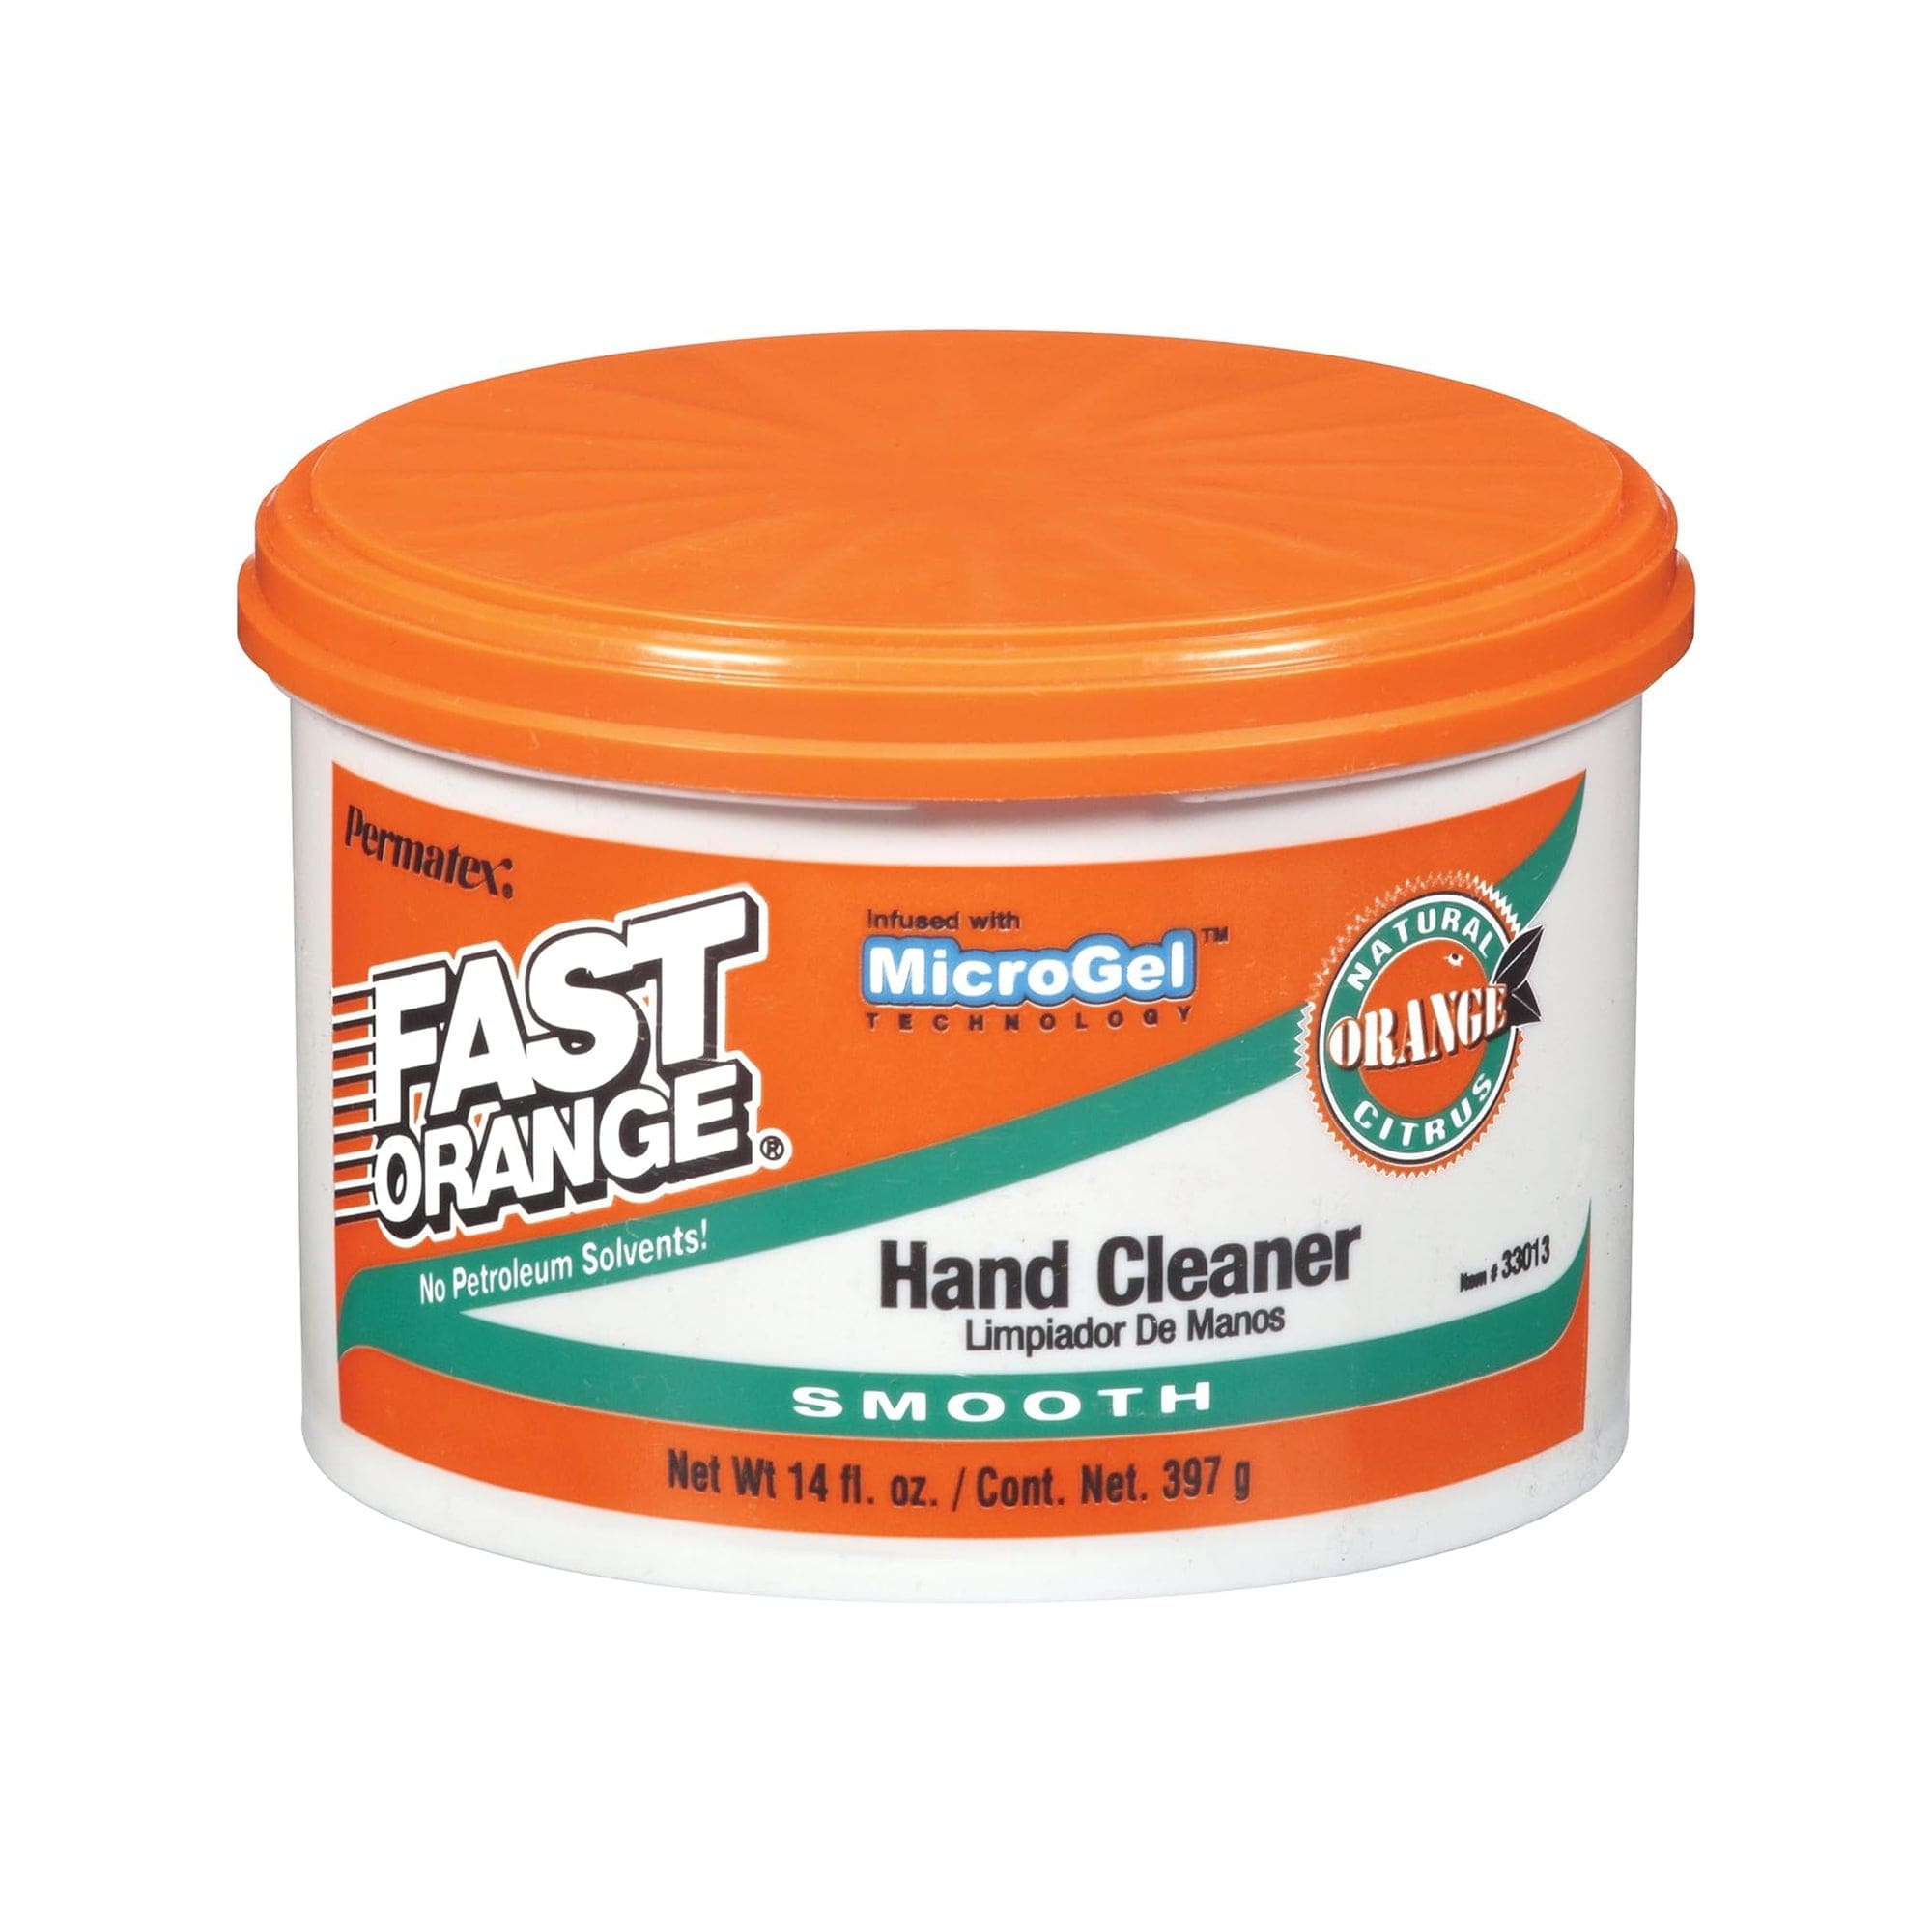 Permatex 01406 Hand Cleaner - 4.5 lb jar